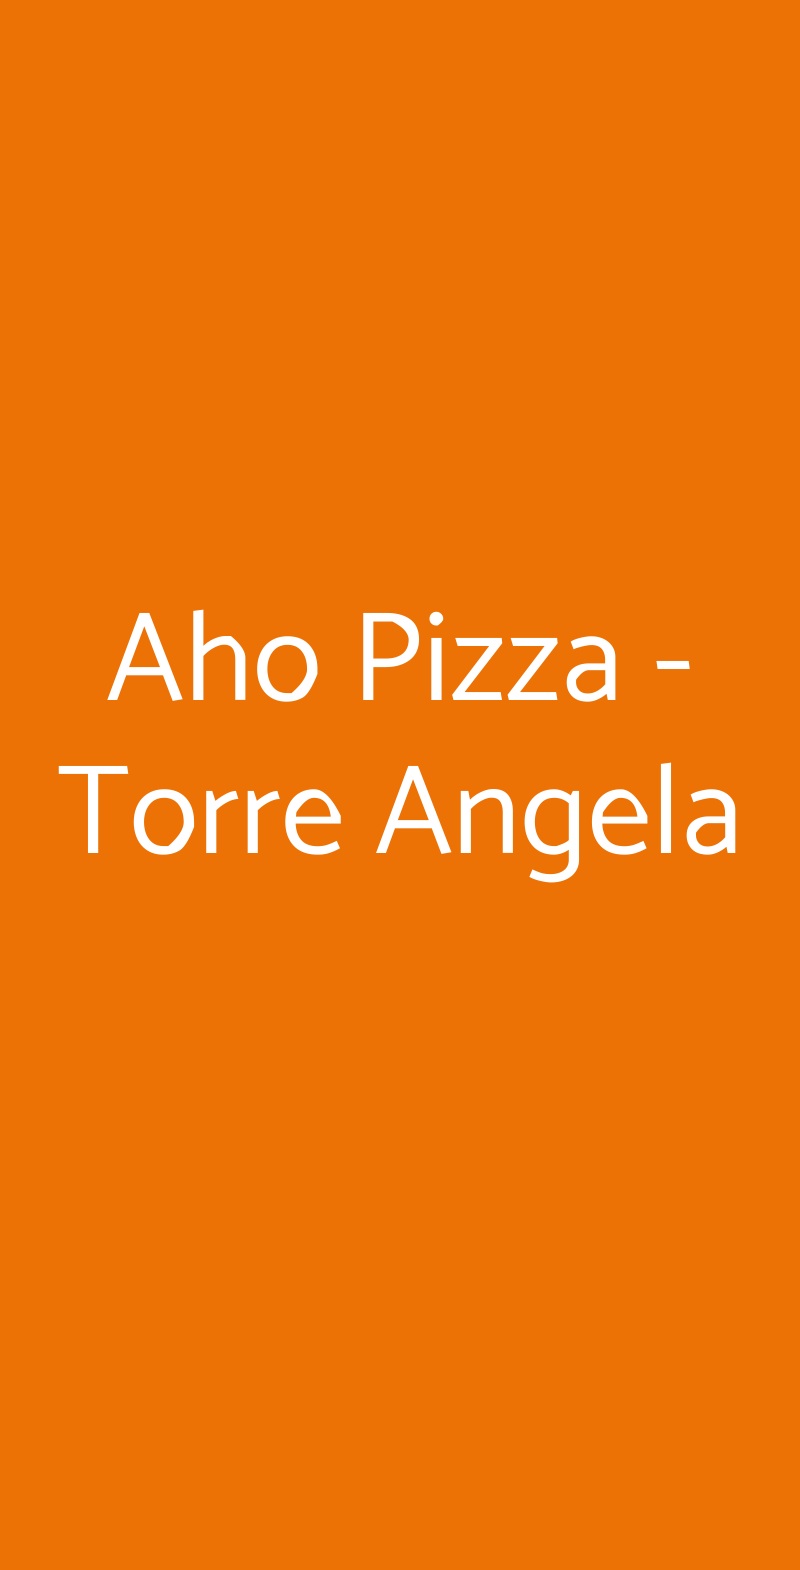 Aho Pizza - Torre Angela Roma menù 1 pagina